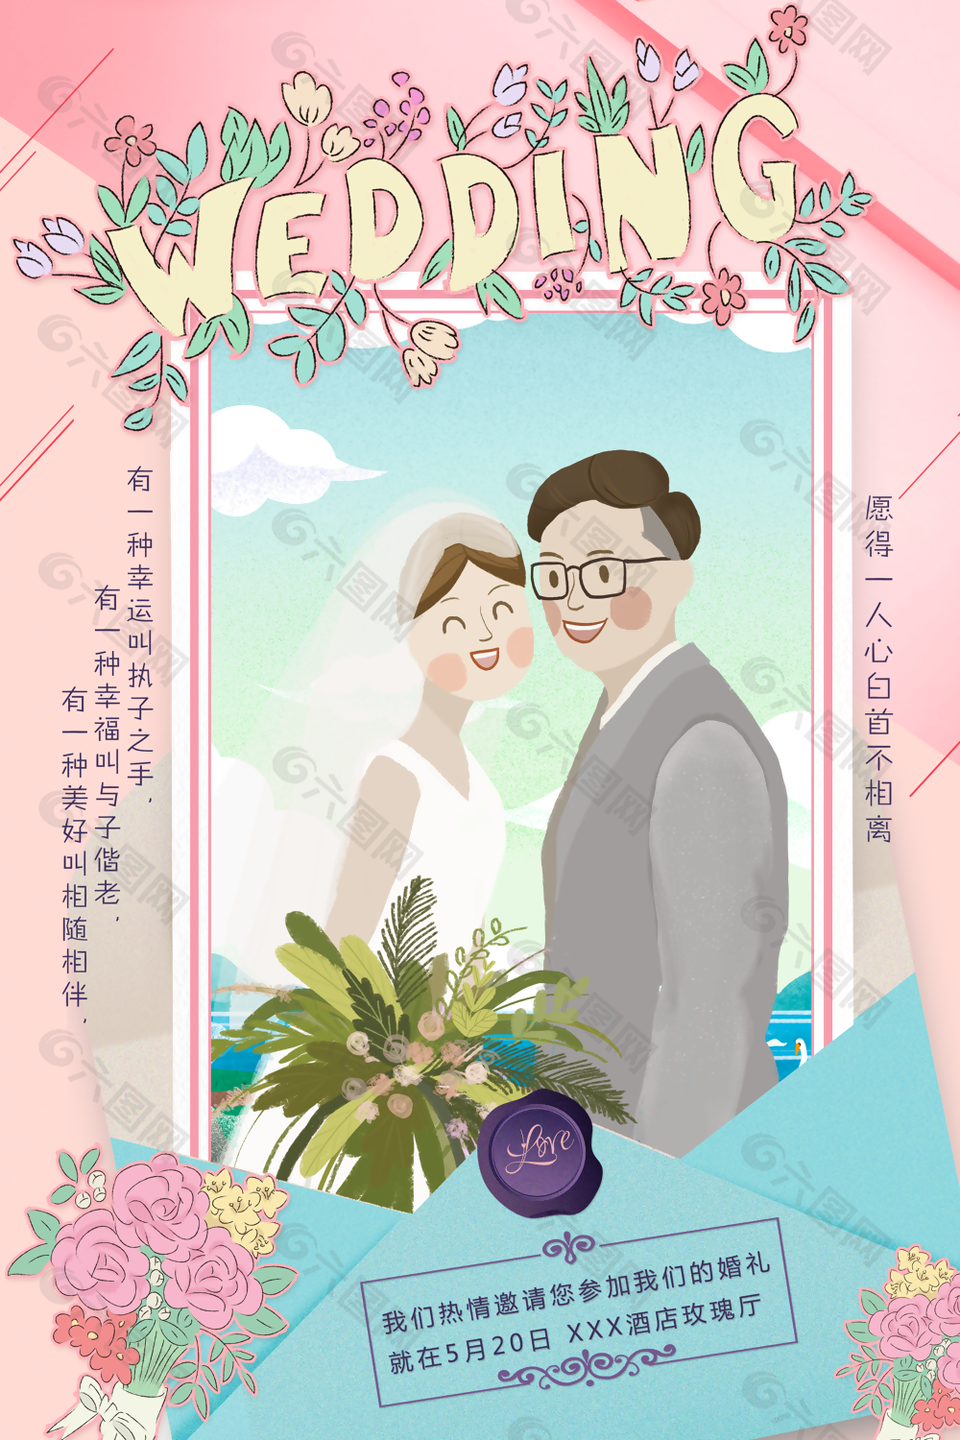 唯美浪漫手绘清新婚礼邀请函图片设计